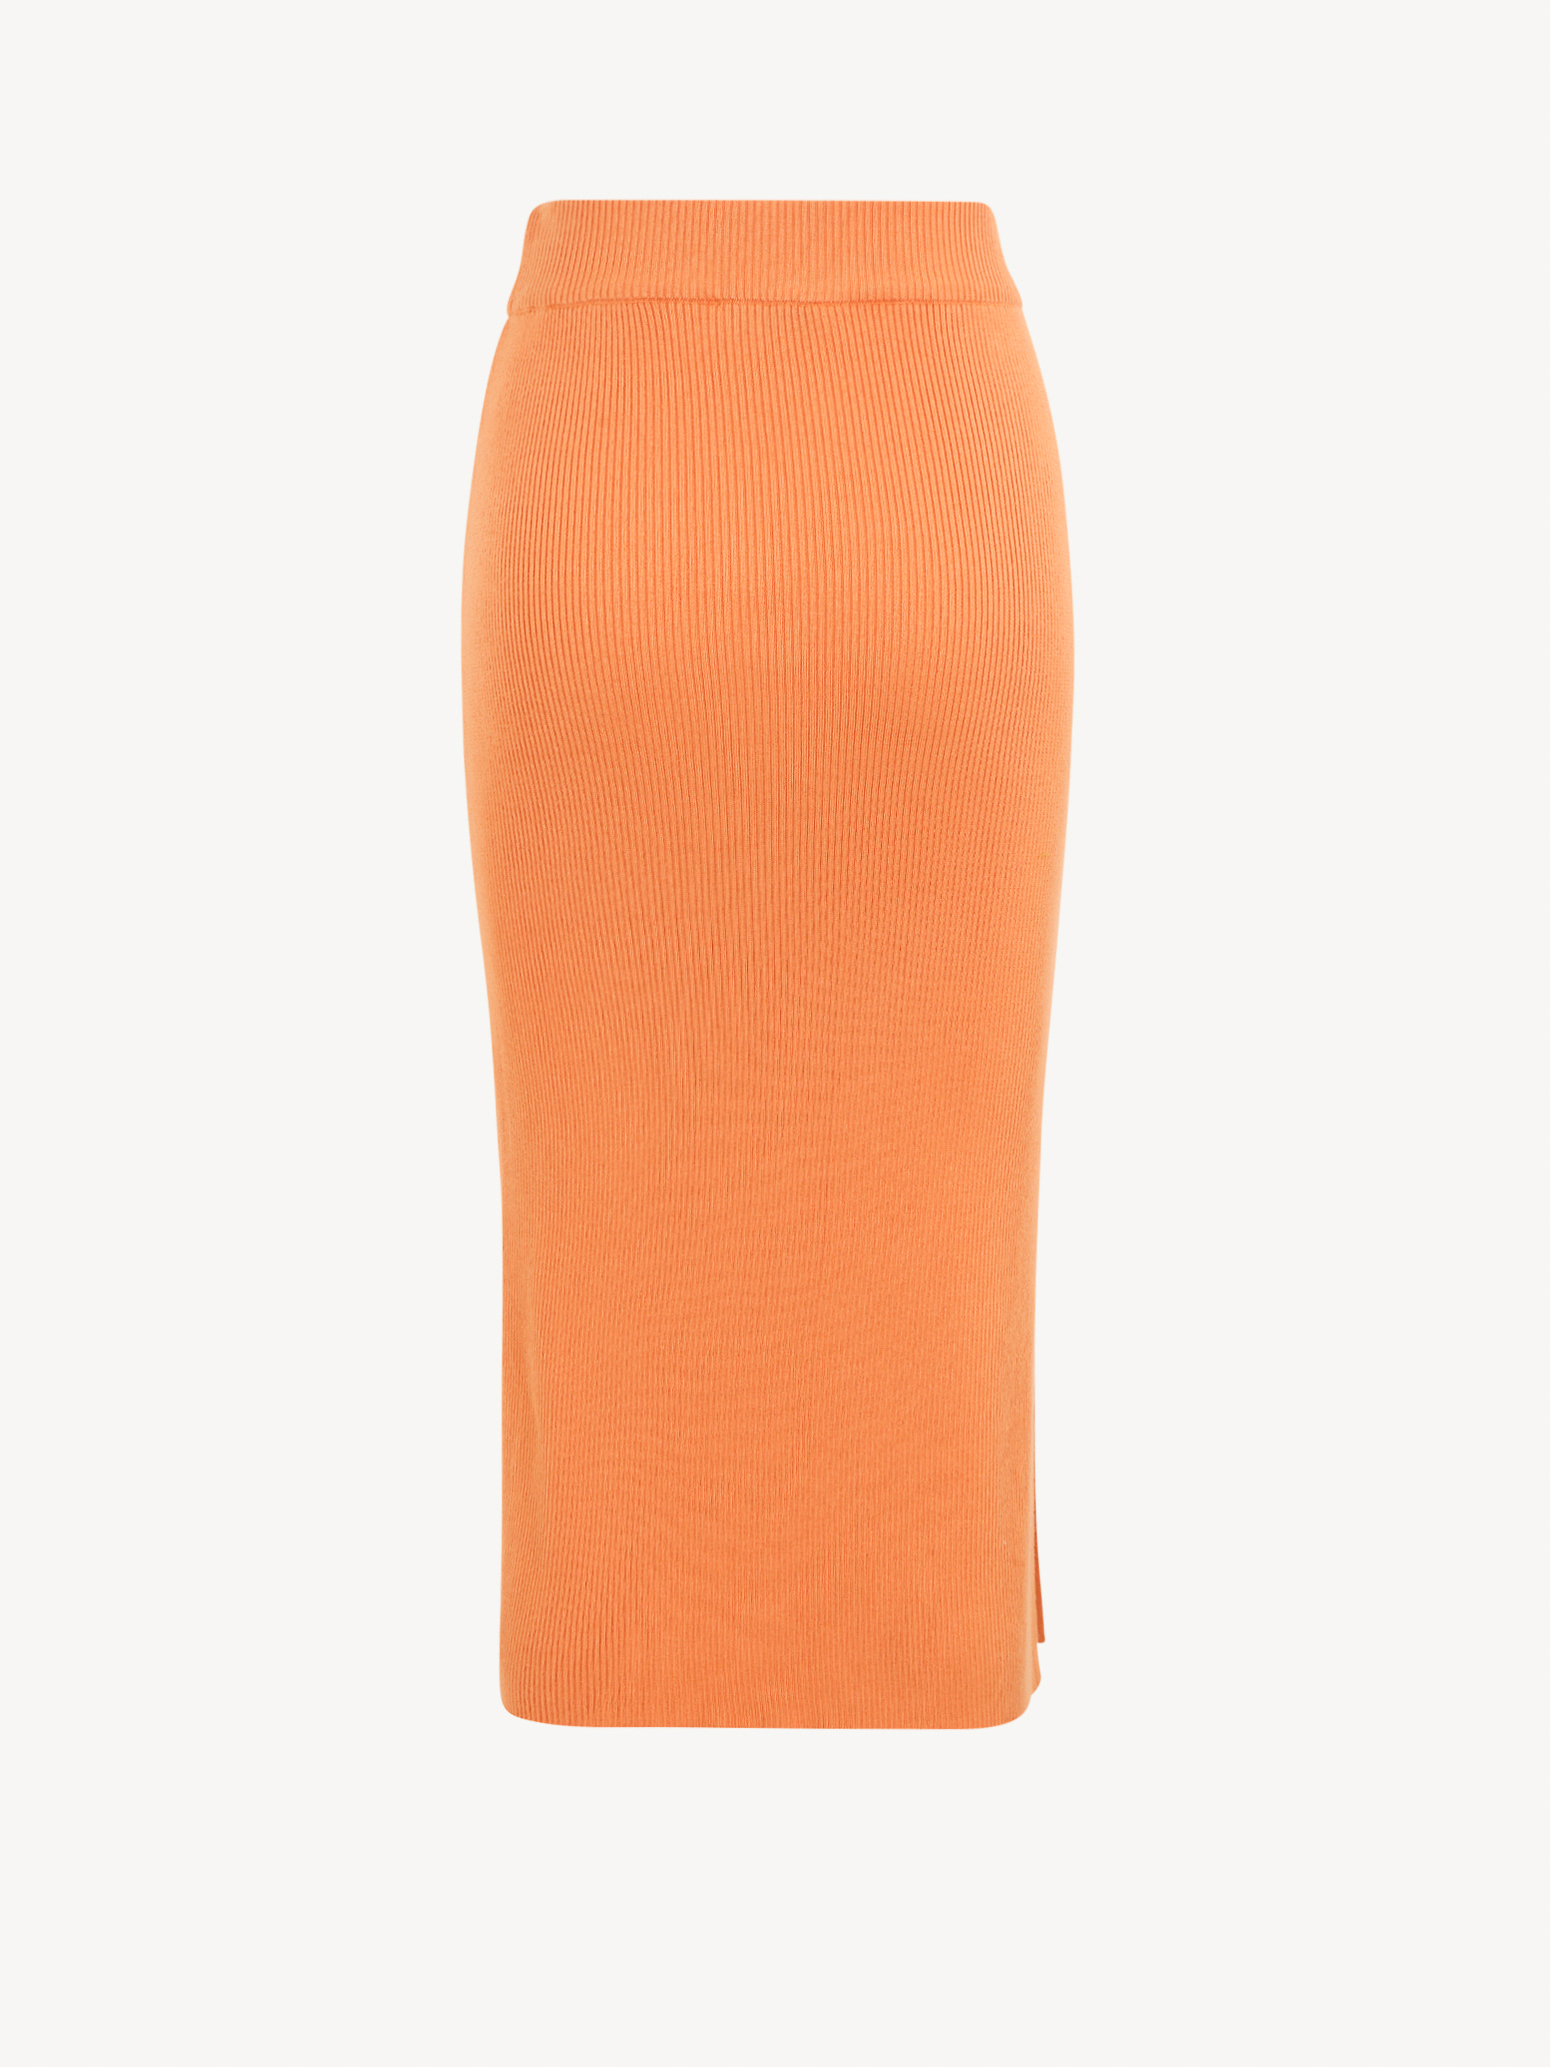 Rock - orange TAW0036-30035: Tamaris Röcke online kaufen!